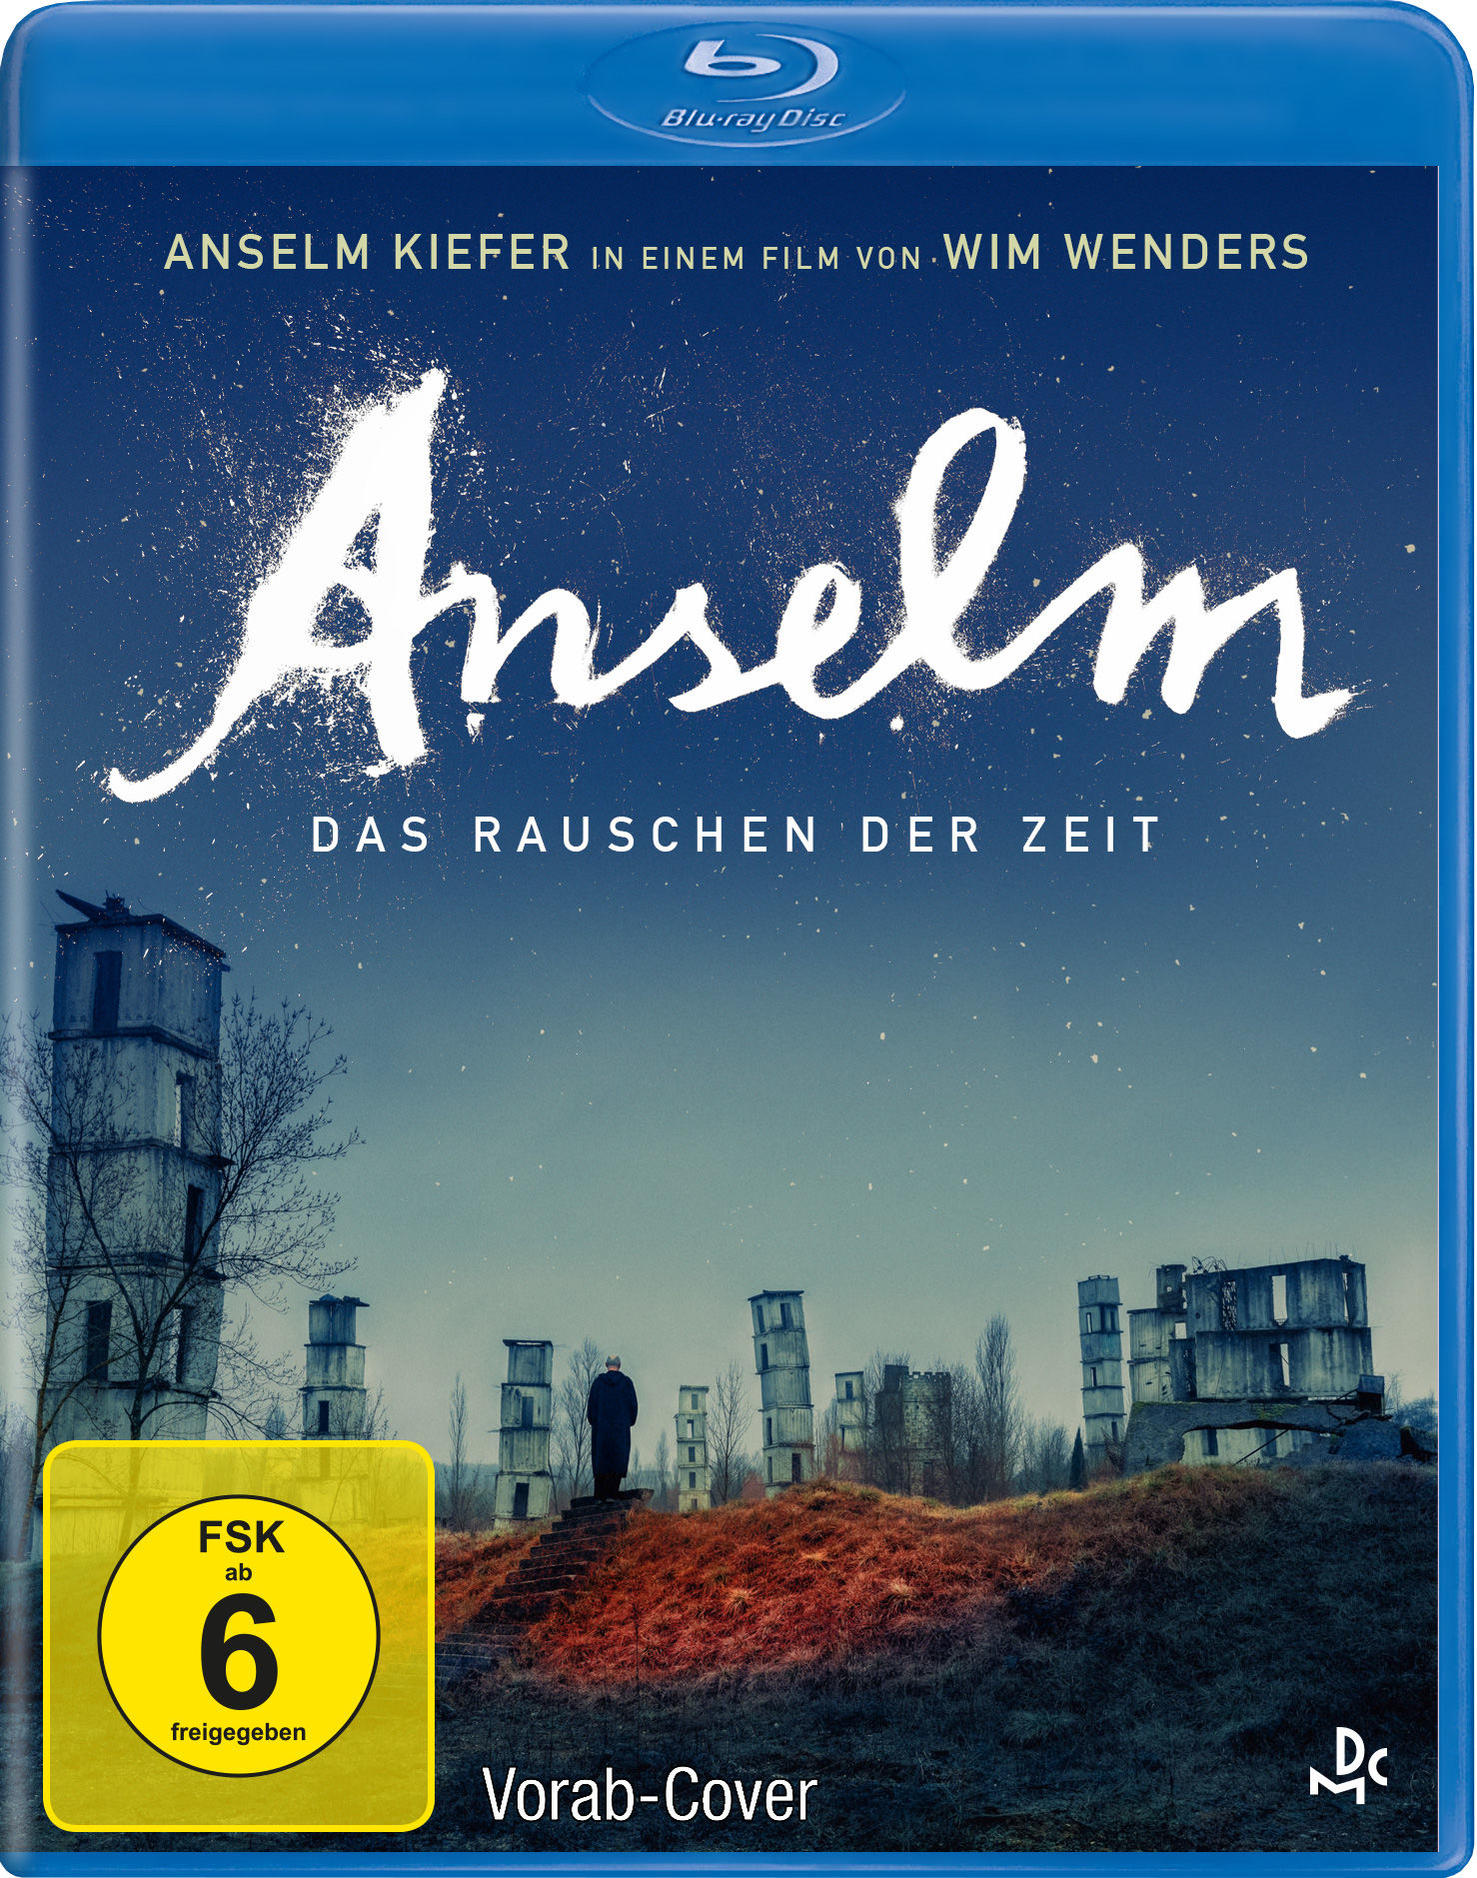 Anselm - Das der Rauschen Blu-ray Zeit